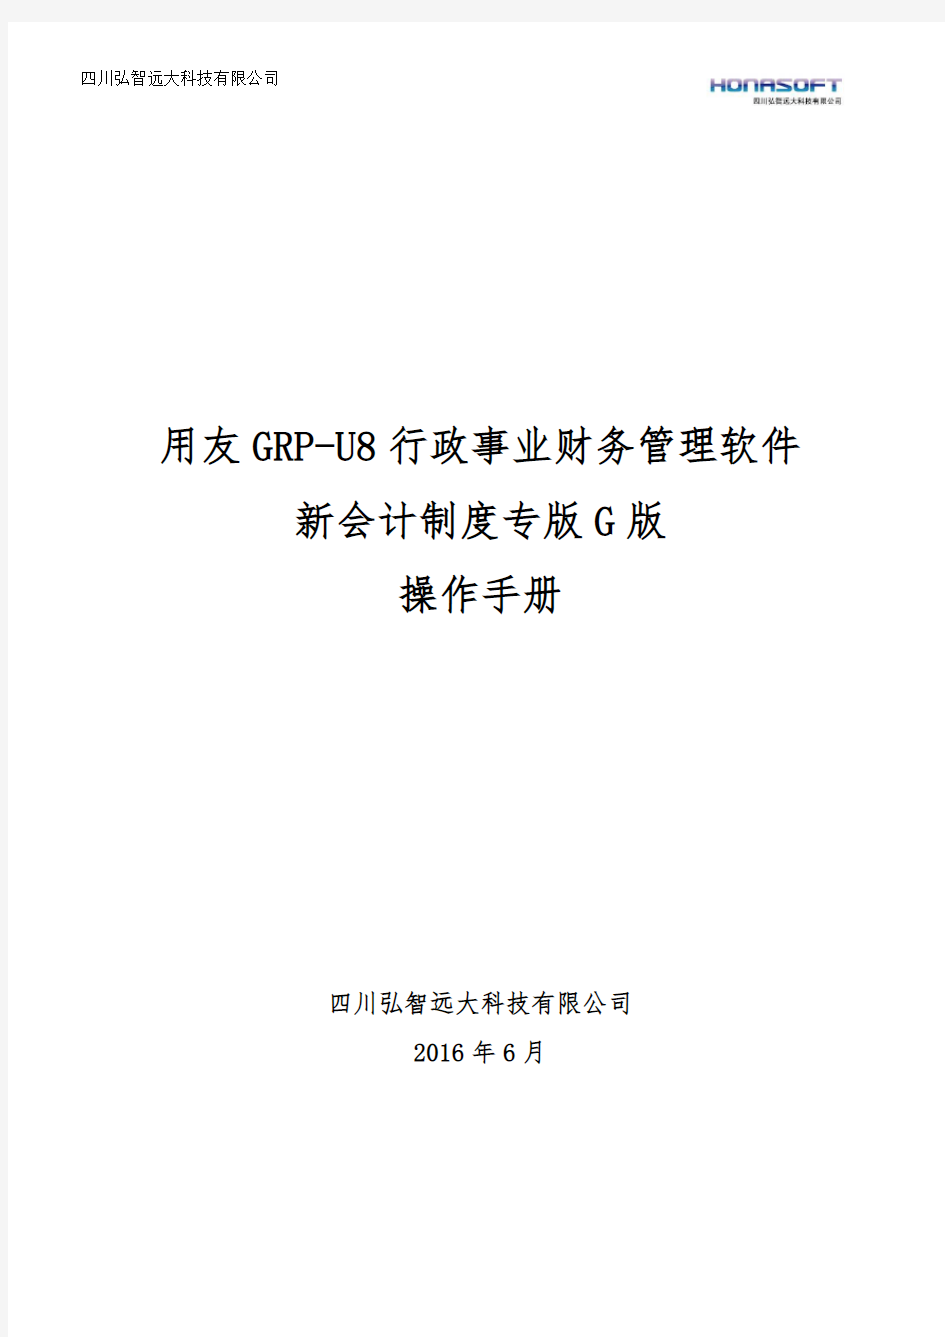 用友GRP-U8-行政事业单位财务管理软件G版操作手册-(1)